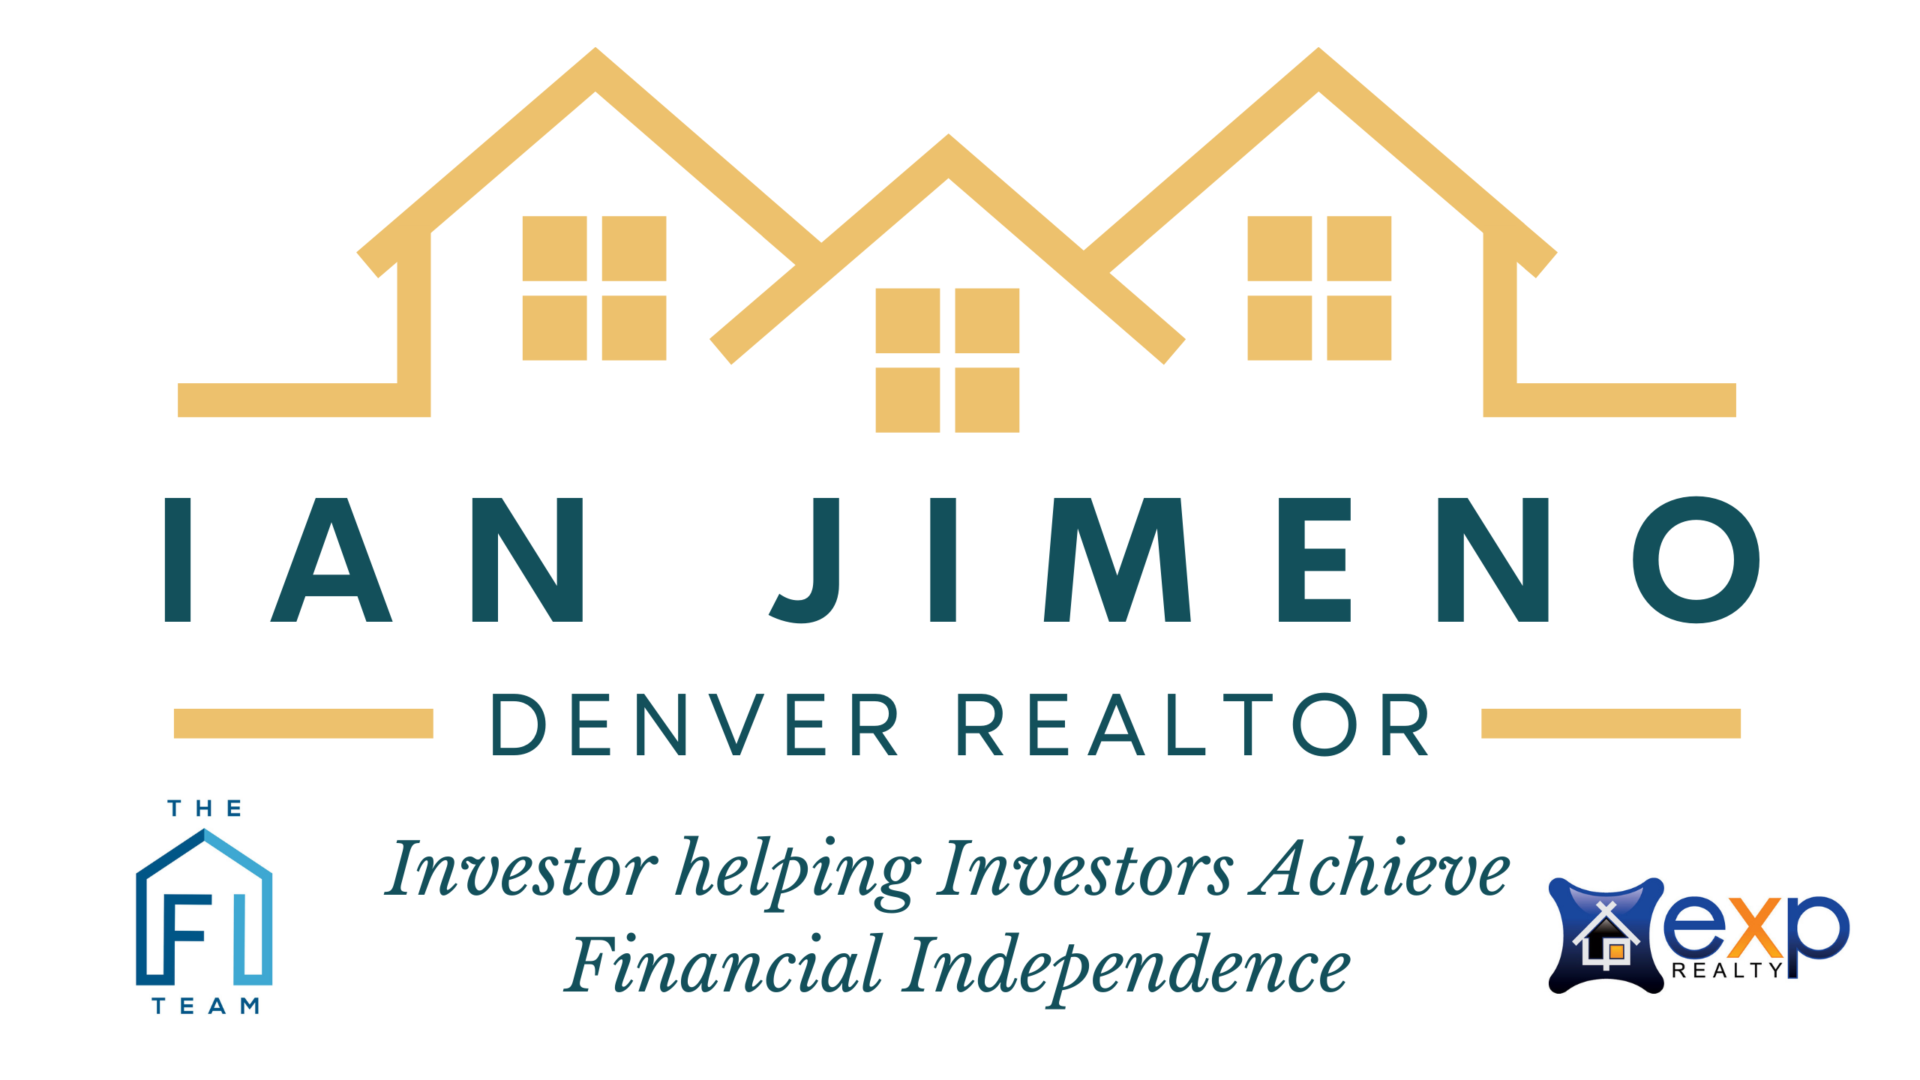 Ian Jimeno – Denver Realtor logo